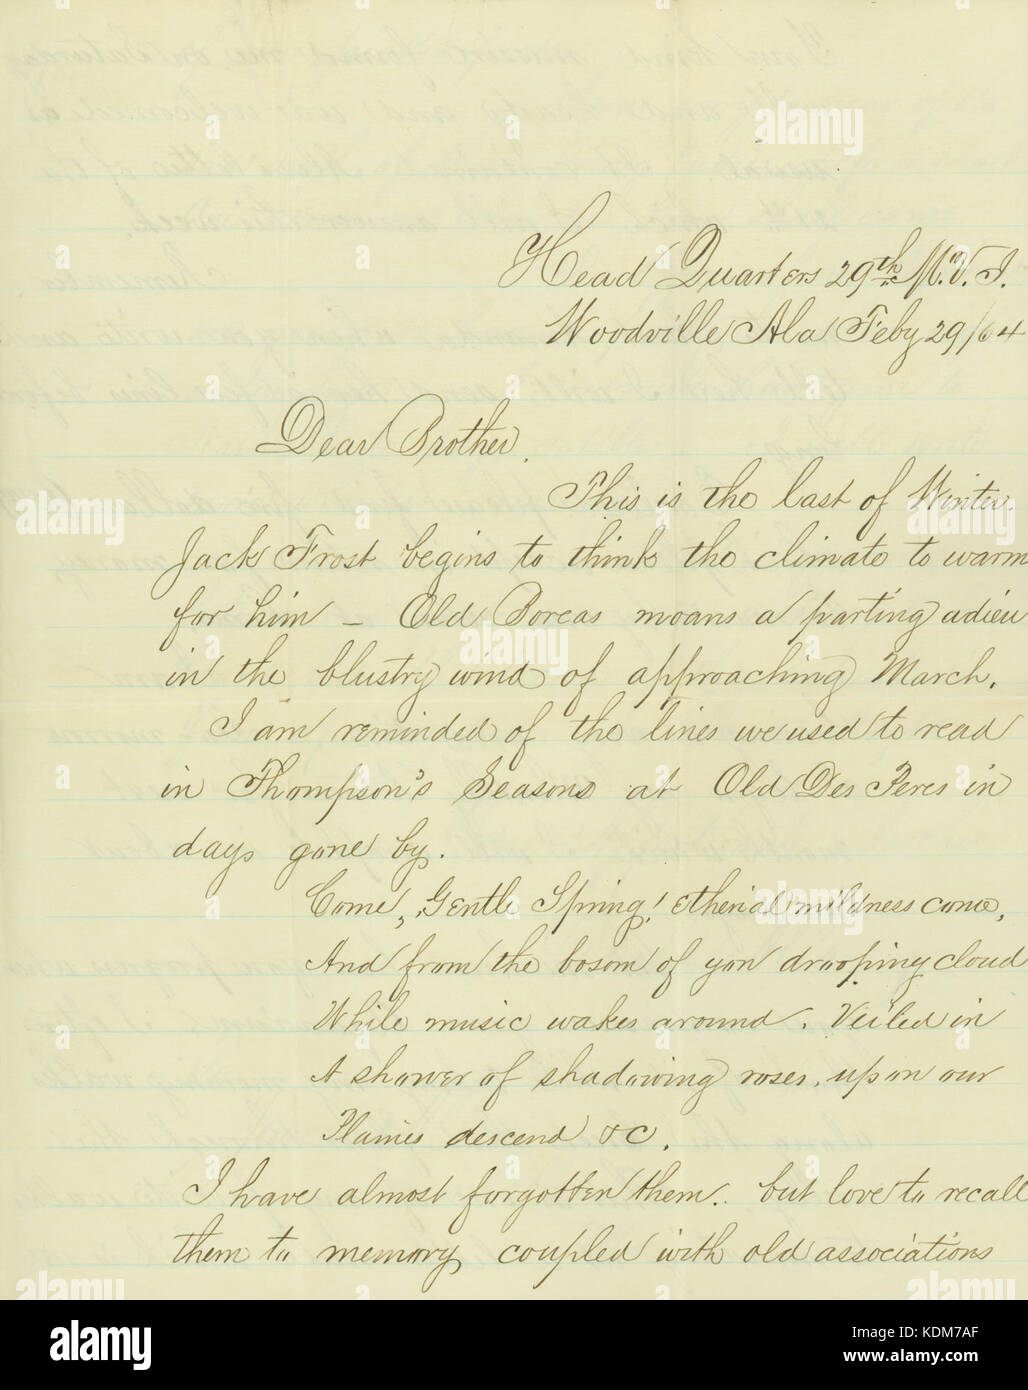 Lettre signée David Allan, Jr., Head Quarters 29e M.V.I., Woodville, Ala., à son frère, James Allan, Saint Louis, Mo., Février 29, 1864 Banque D'Images